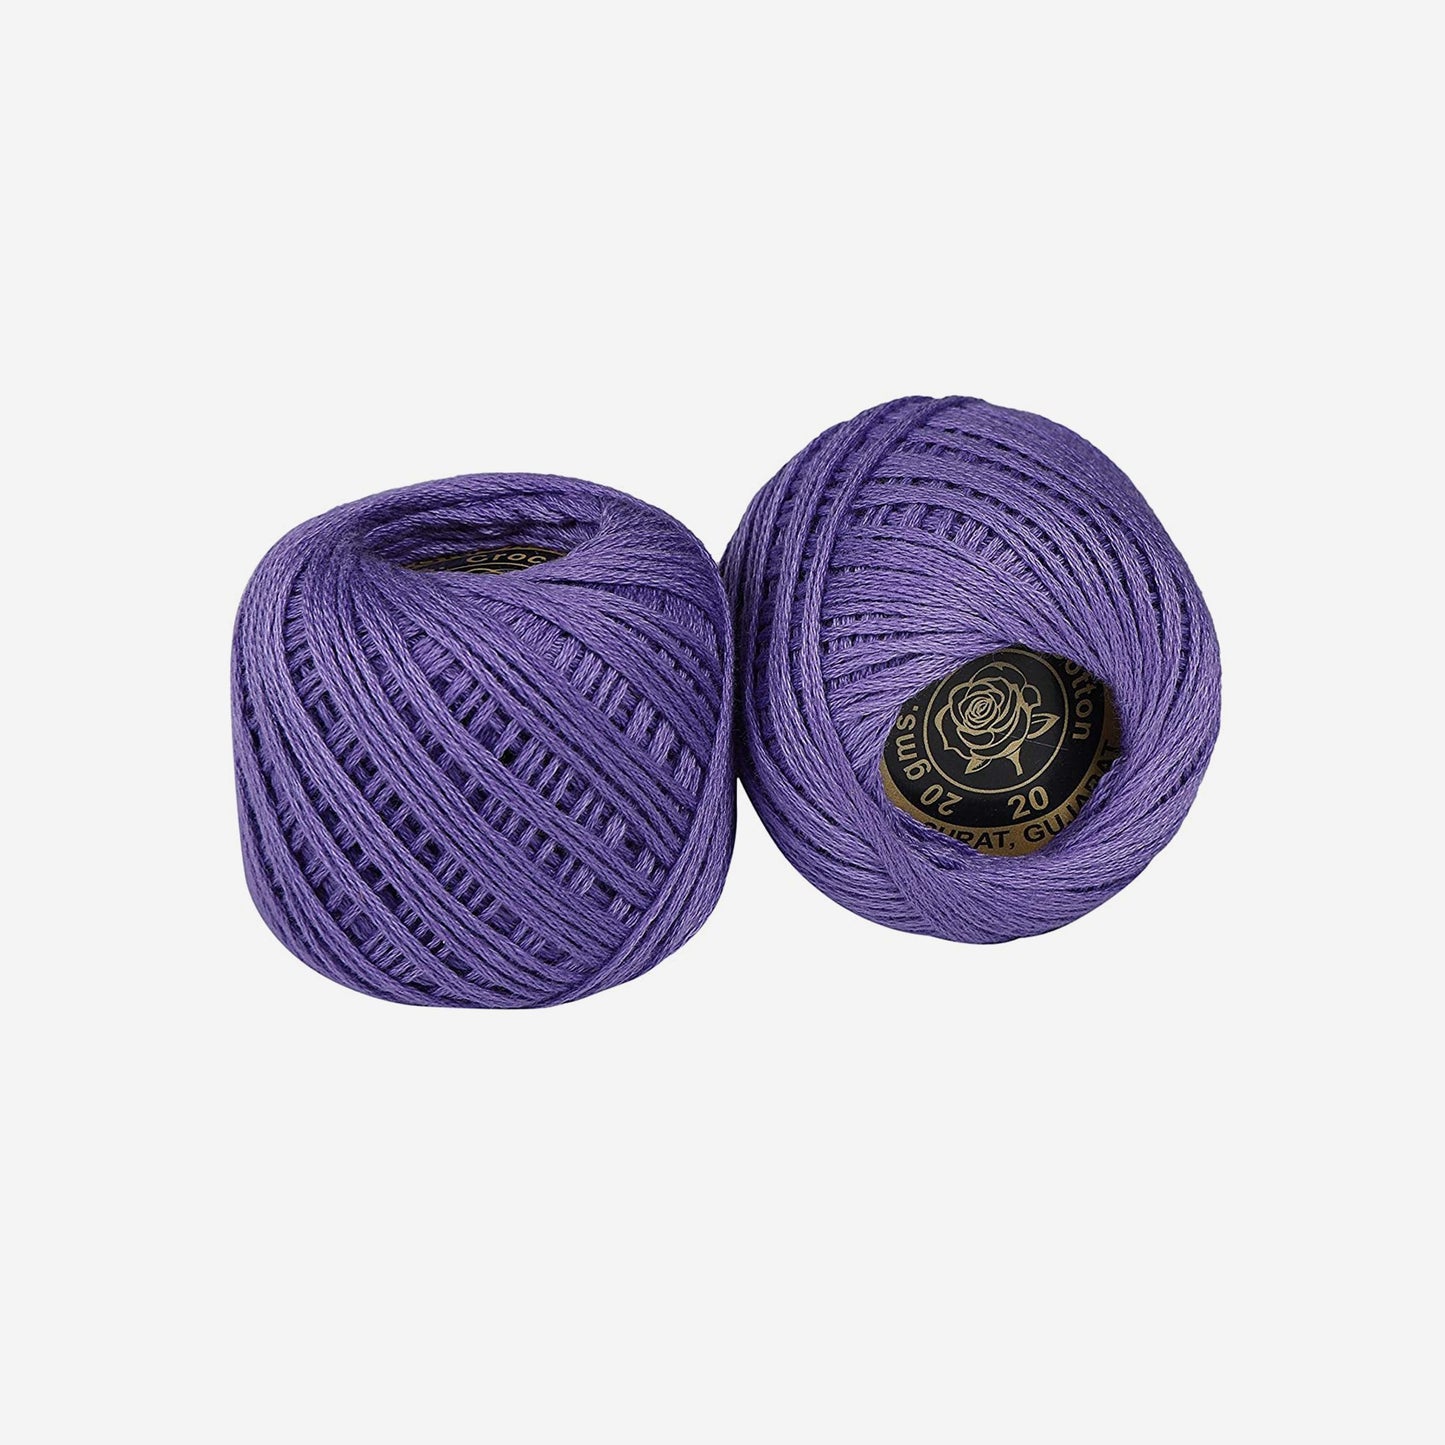 Hand-crochet hoops (Variation 11)